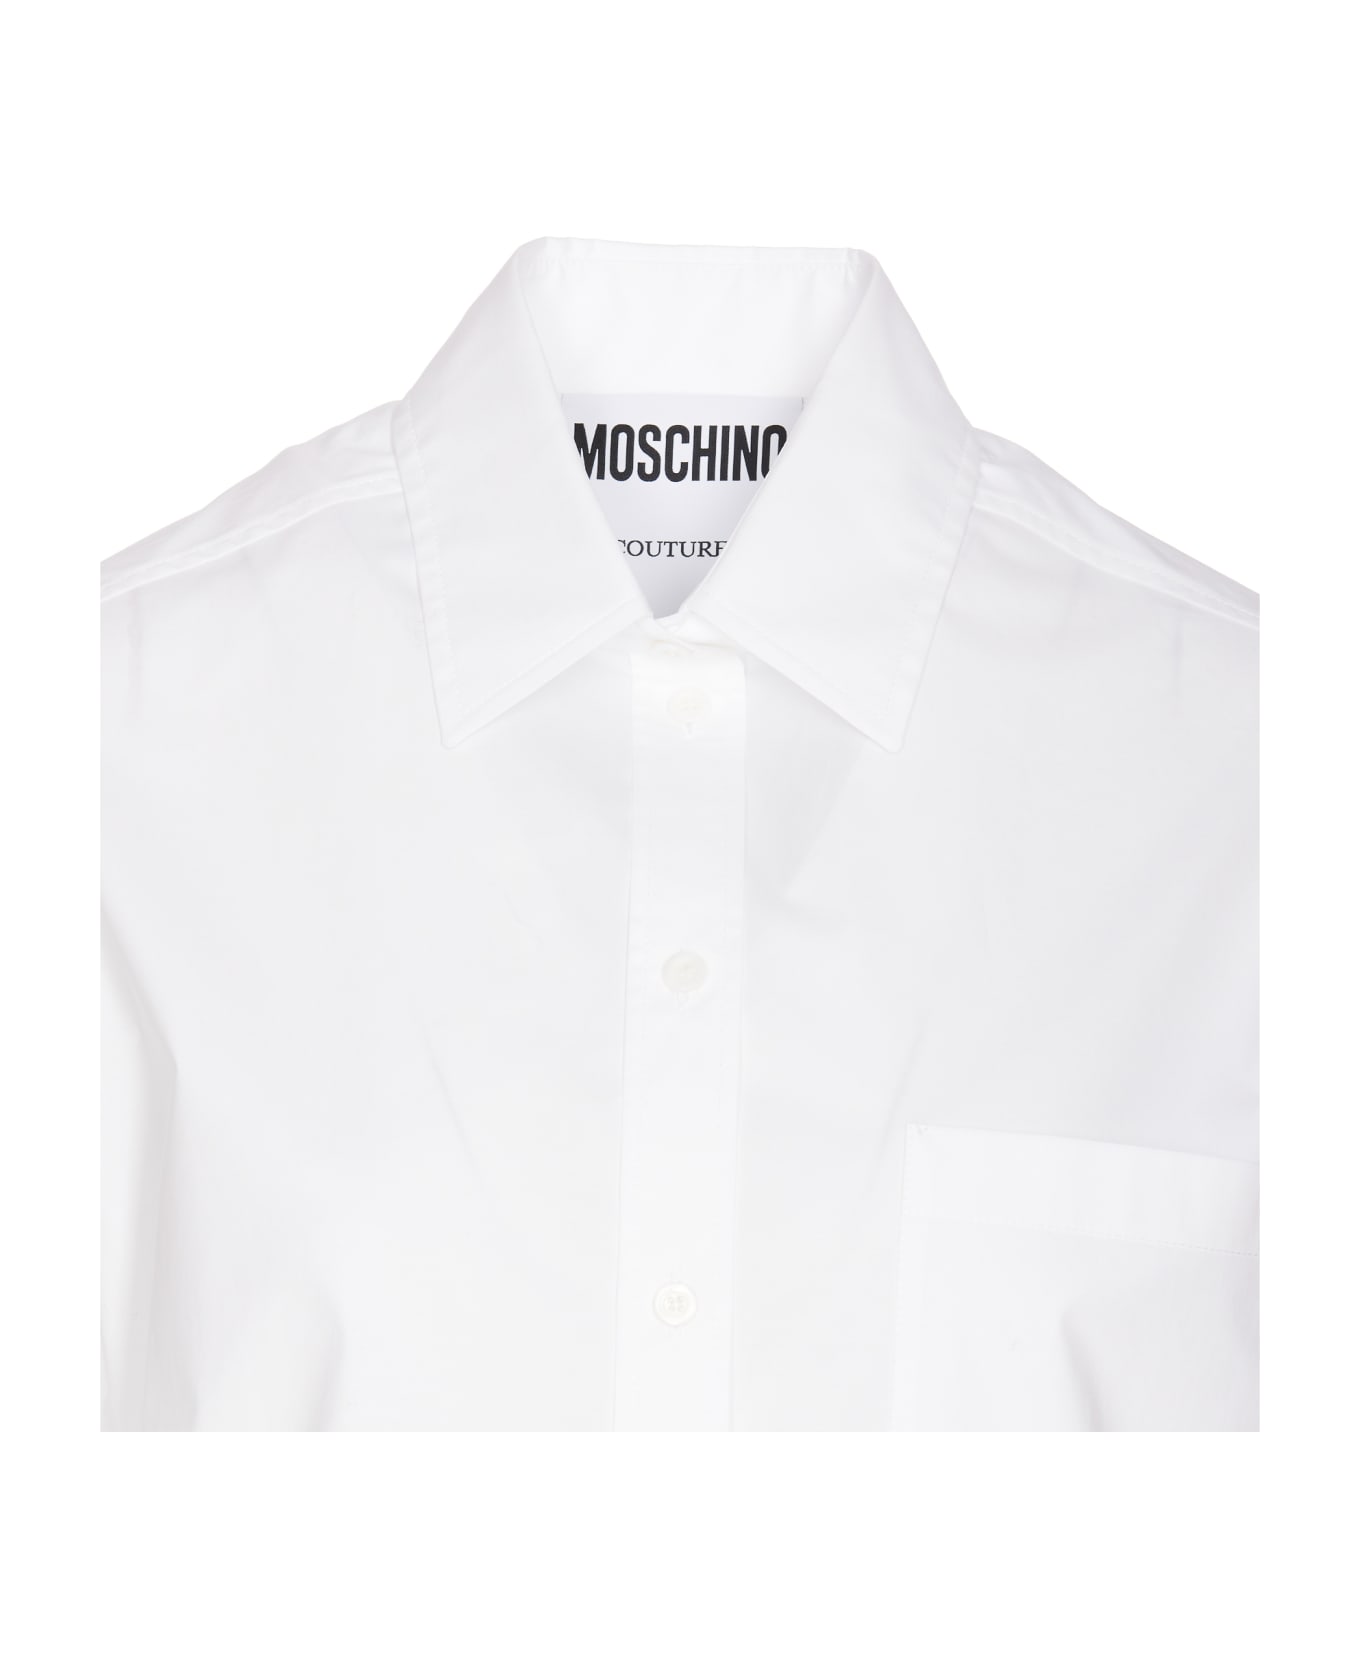 Moschino Logo Shirt - White シャツ